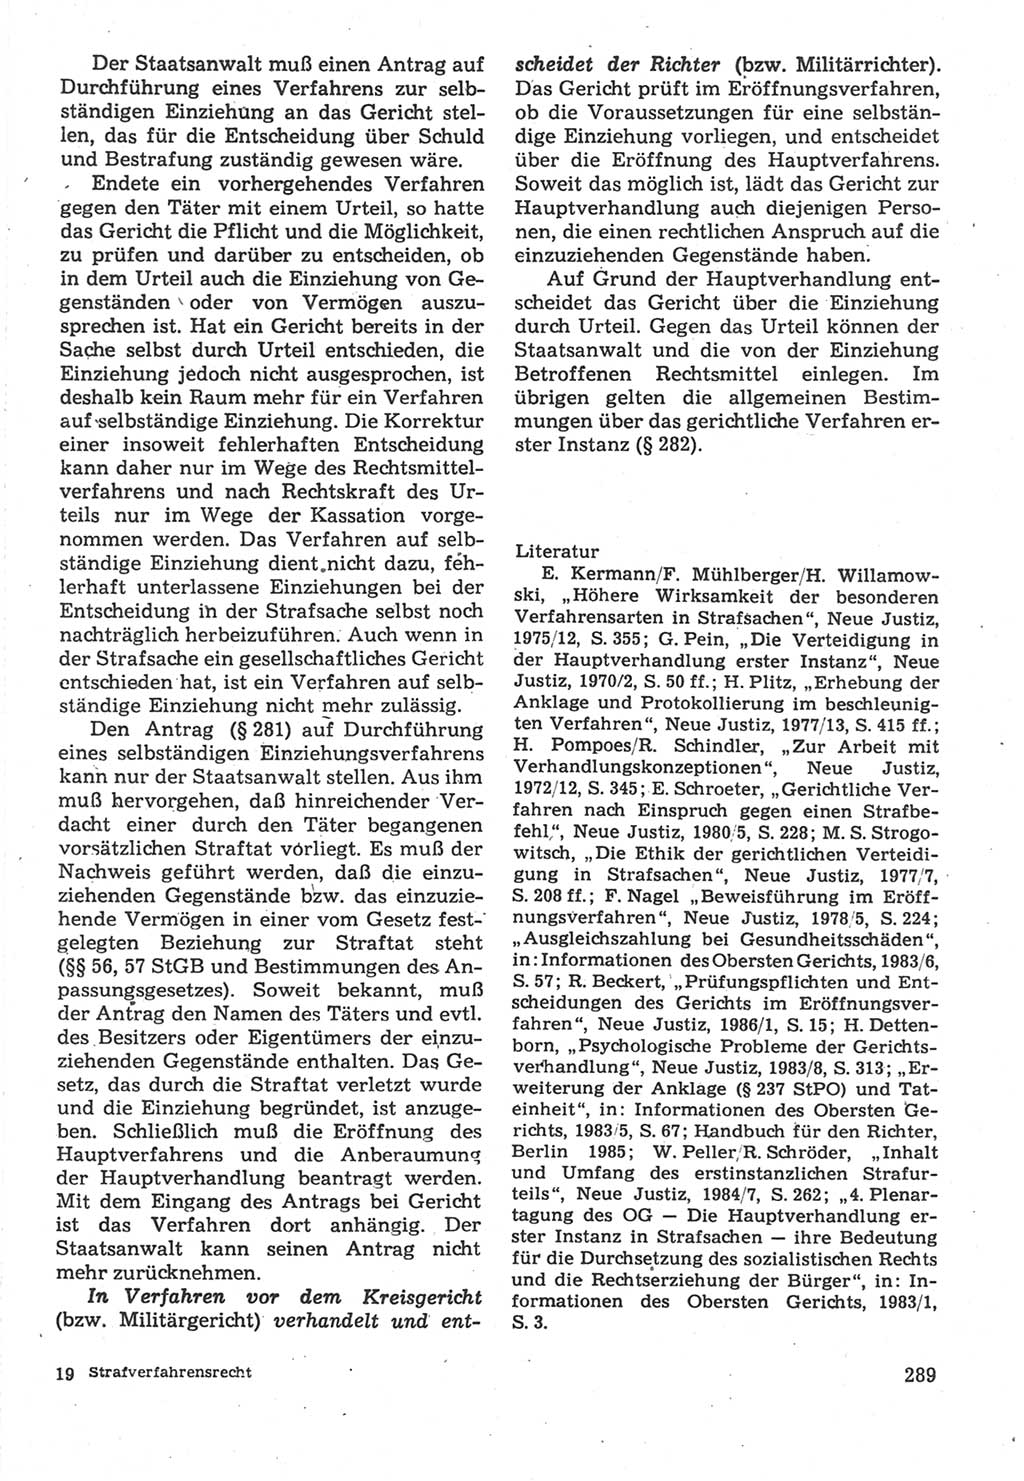 Strafverfahrensrecht [Deutsche Demokratische Republik (DDR)], Lehrbuch 1987, Seite 289 (Strafverf.-R. DDR Lb. 1987, S. 289)